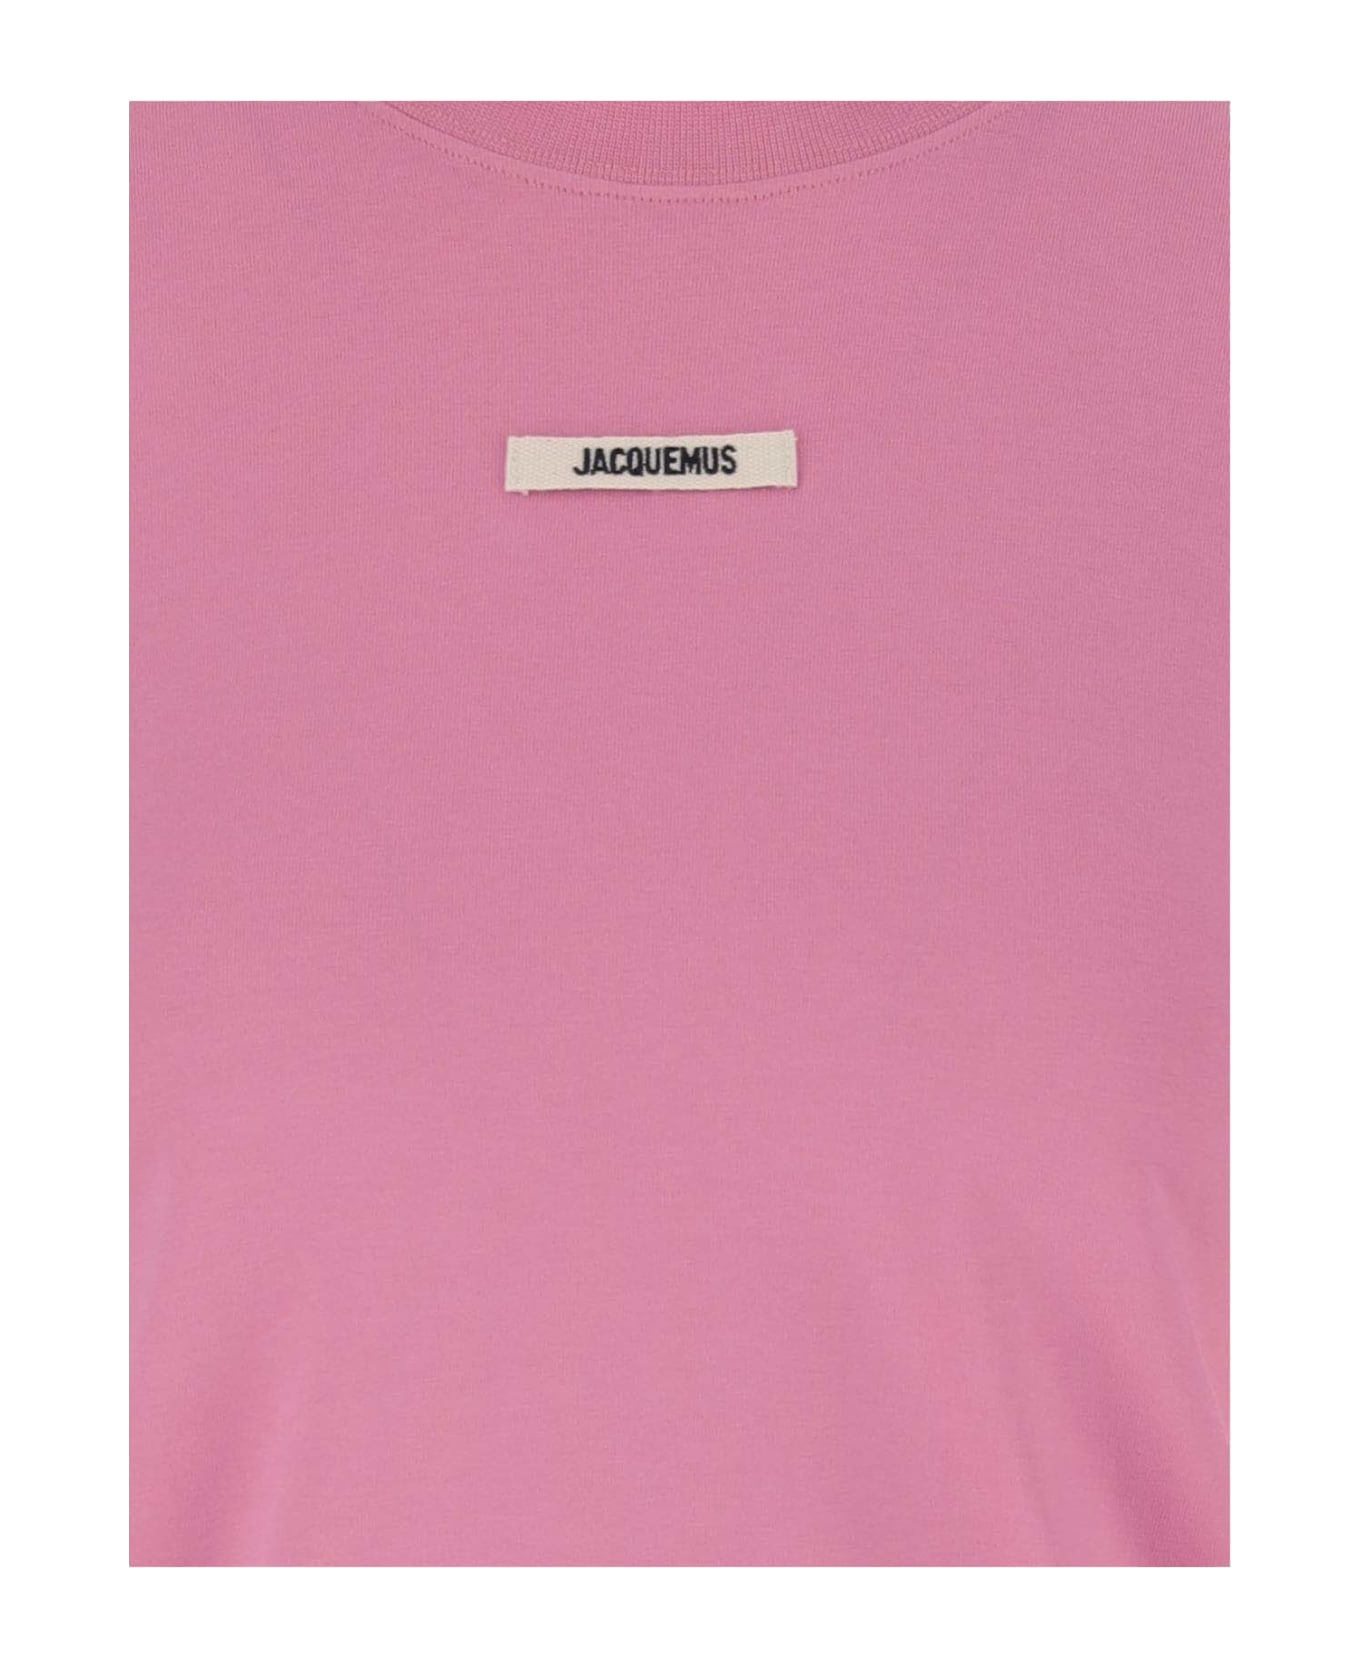 Jacquemus Le T-shirt Gros Grain Manches Longues - Pink